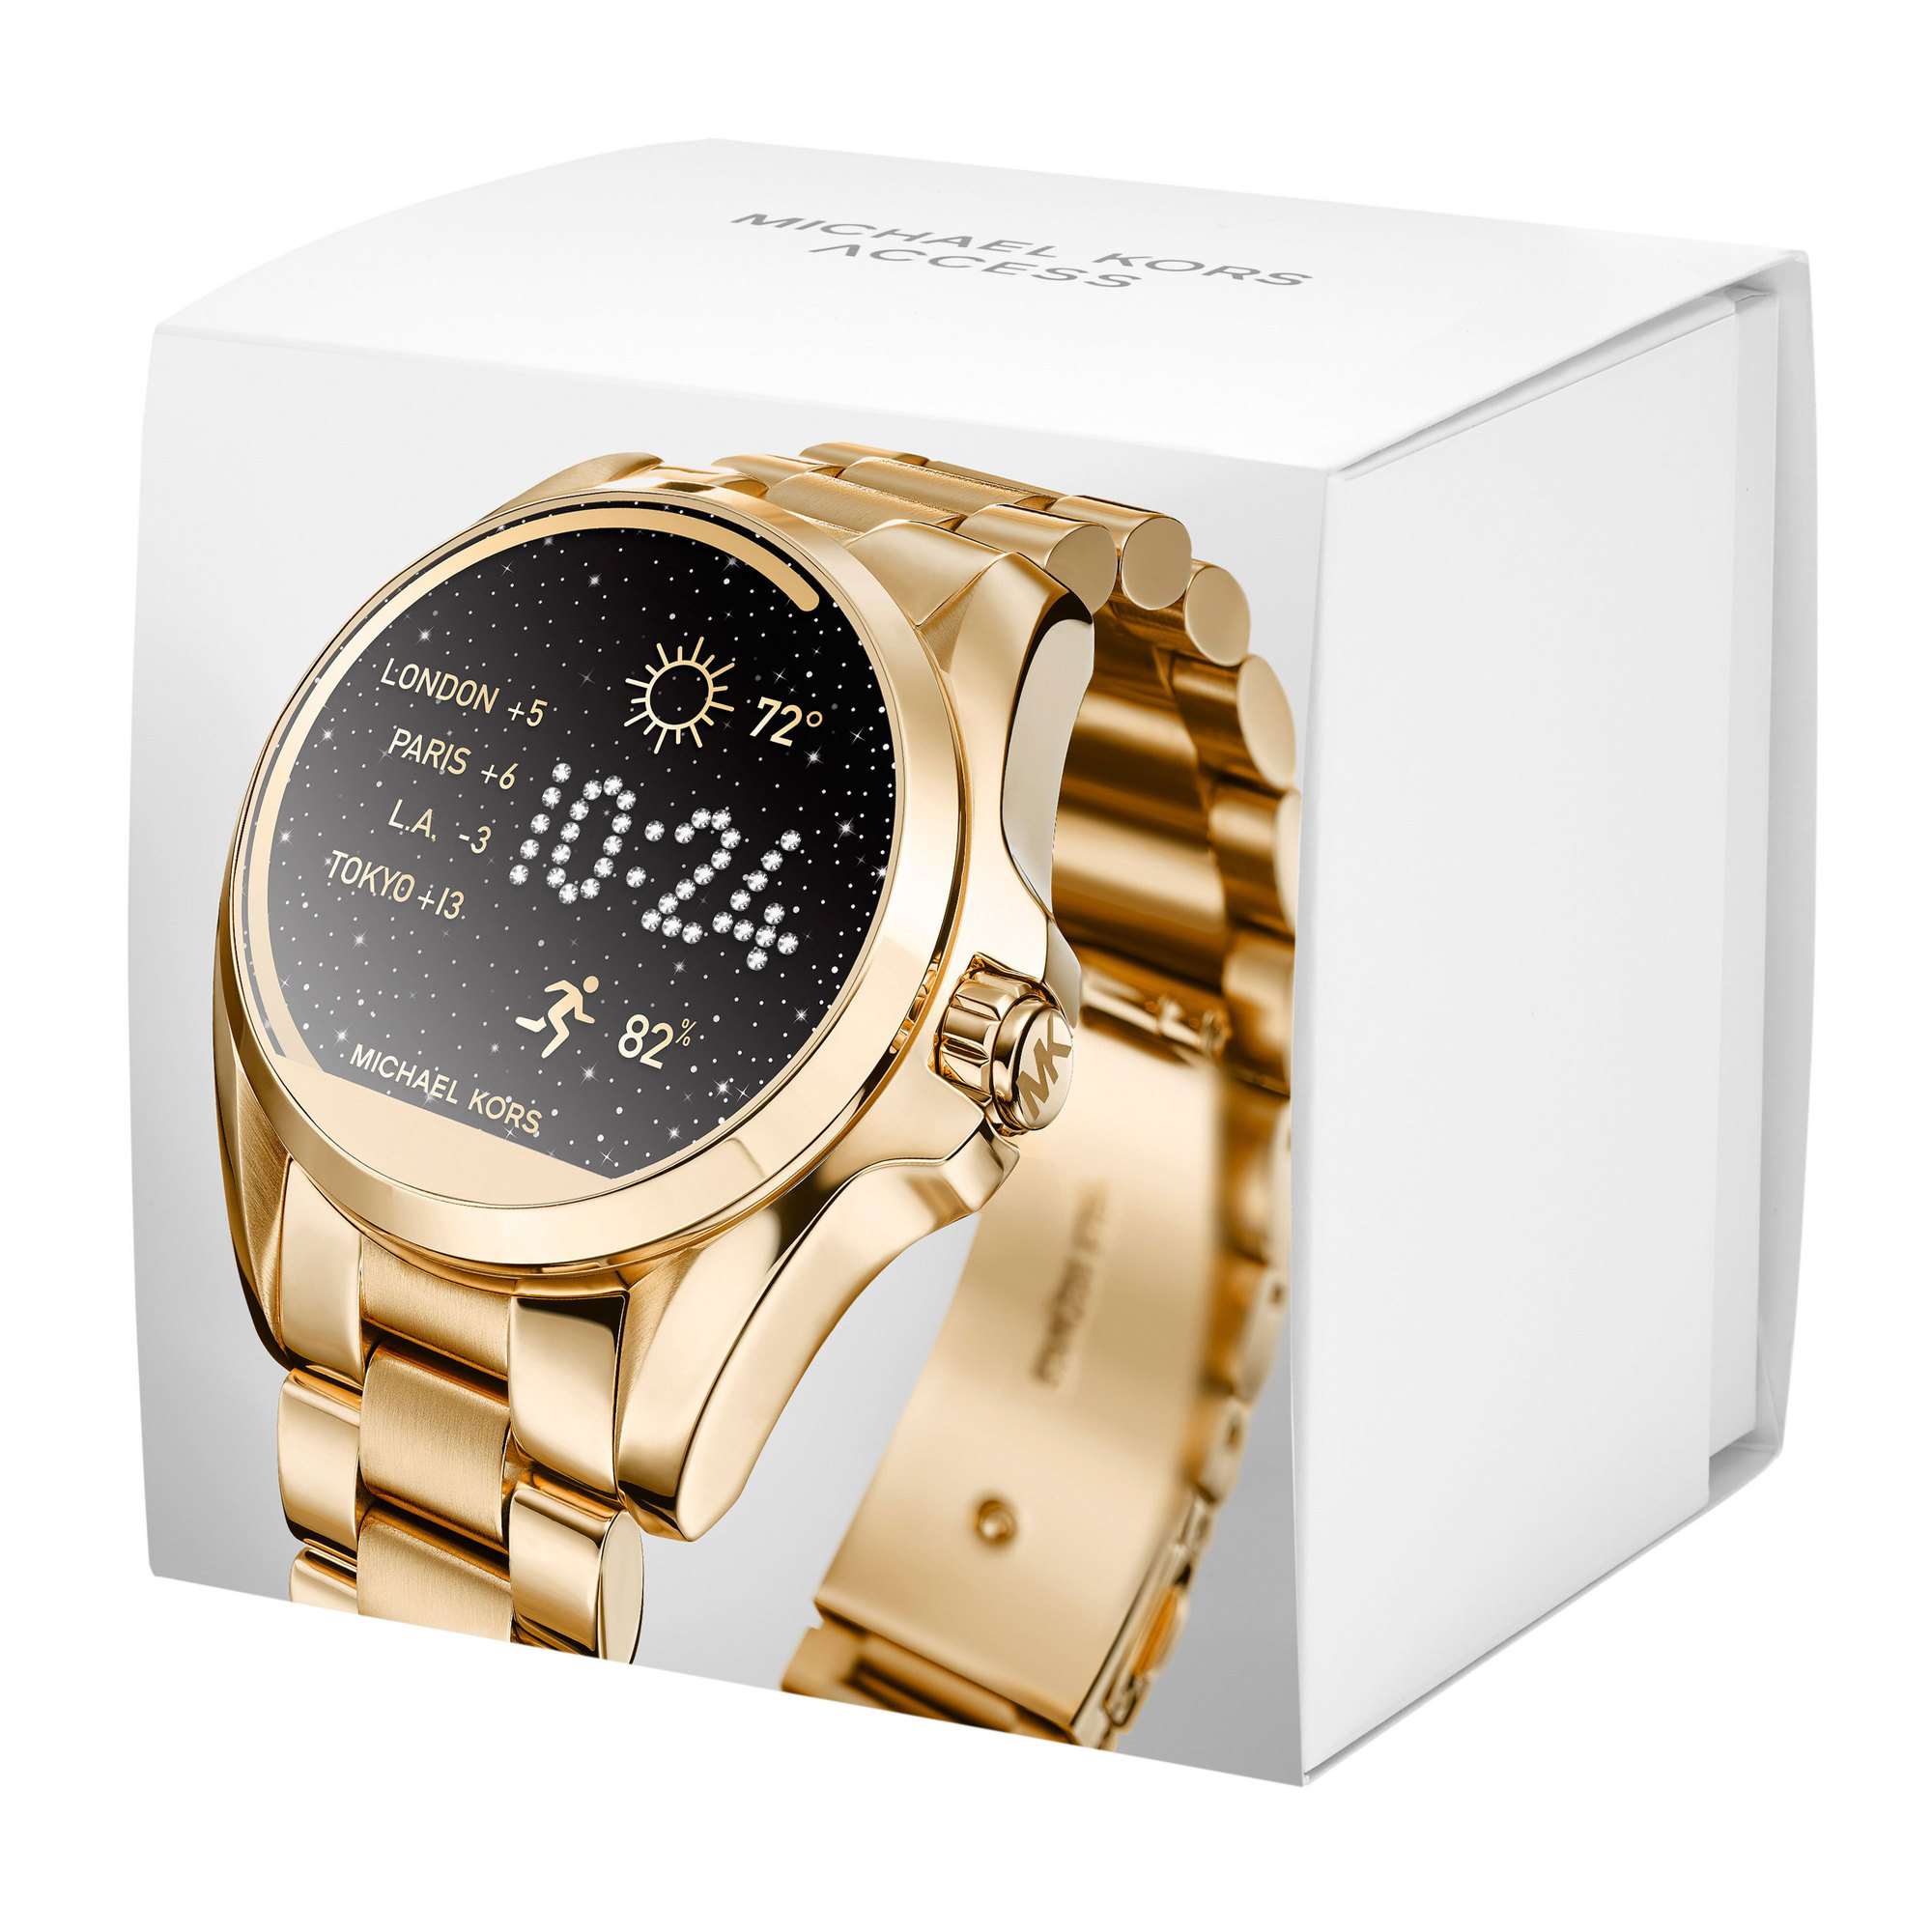 Michael Kors MKT5001 Bradshaw Smartwatch horloge